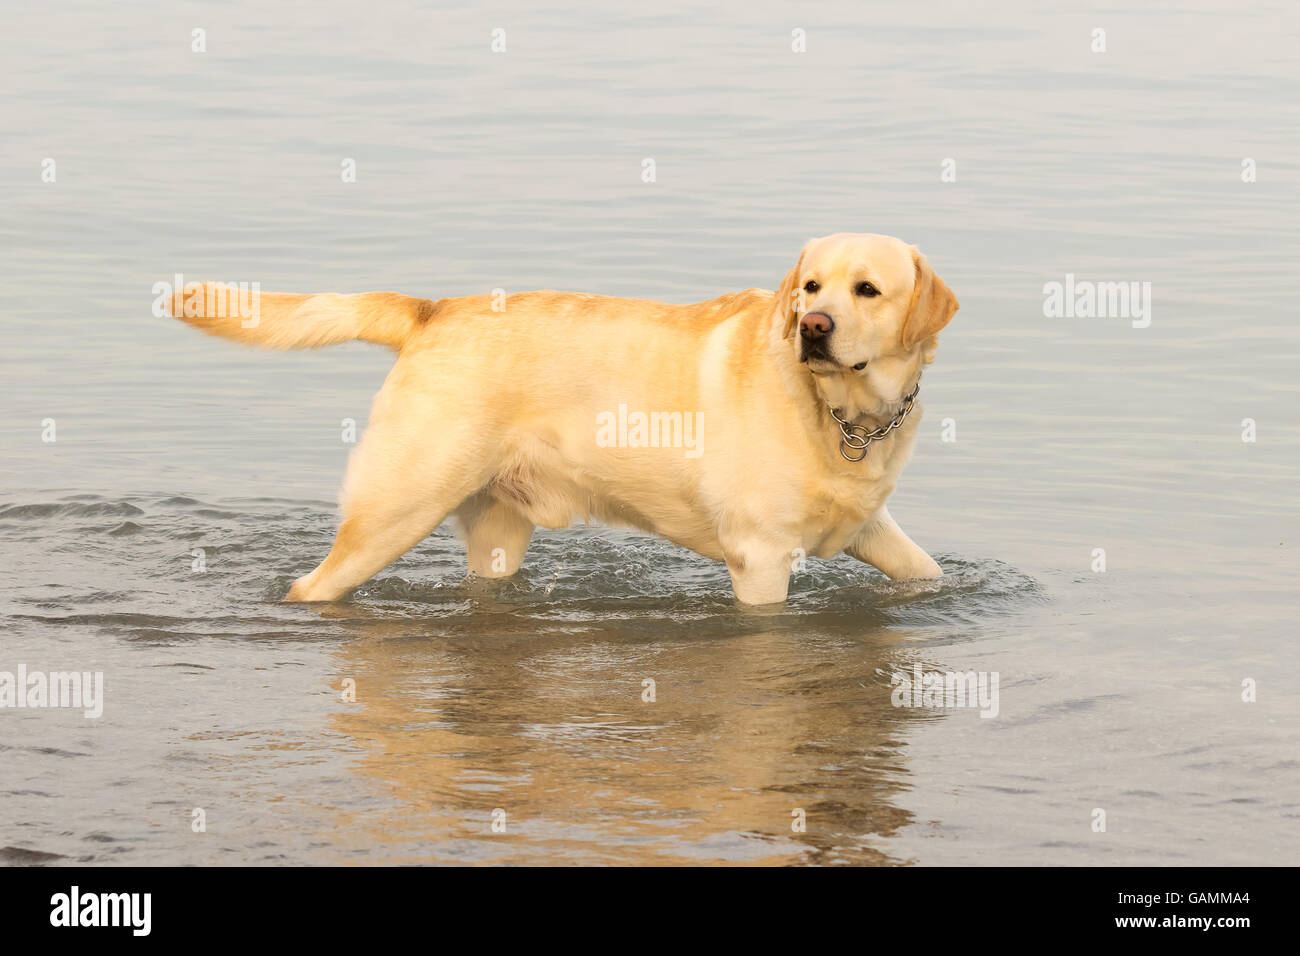 Labrador dog having fun at the sea. Stock Photo